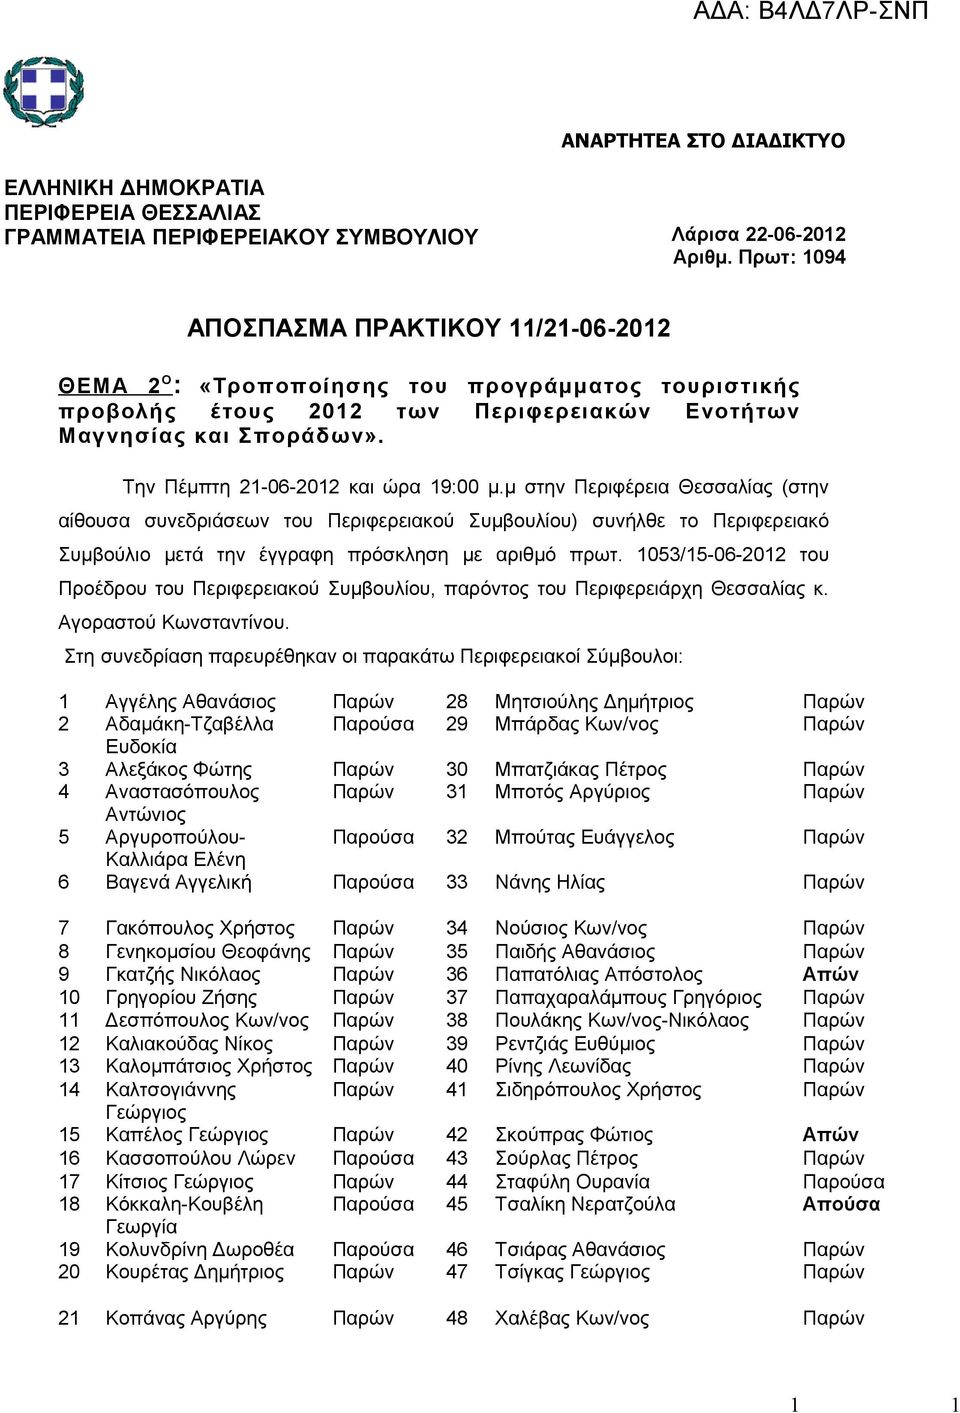 Την Πέμπτη 21-06-2012 και ώρα 19:00 μ.μ στην Περιφέρεια Θεσσαλίας (στην αίθουσα συνεδριάσεων του Περιφερειακού Συμβουλίου) συνήλθε το Περιφερειακό Συμβούλιο μετά την έγγραφη πρόσκληση με αριθμό πρωτ.